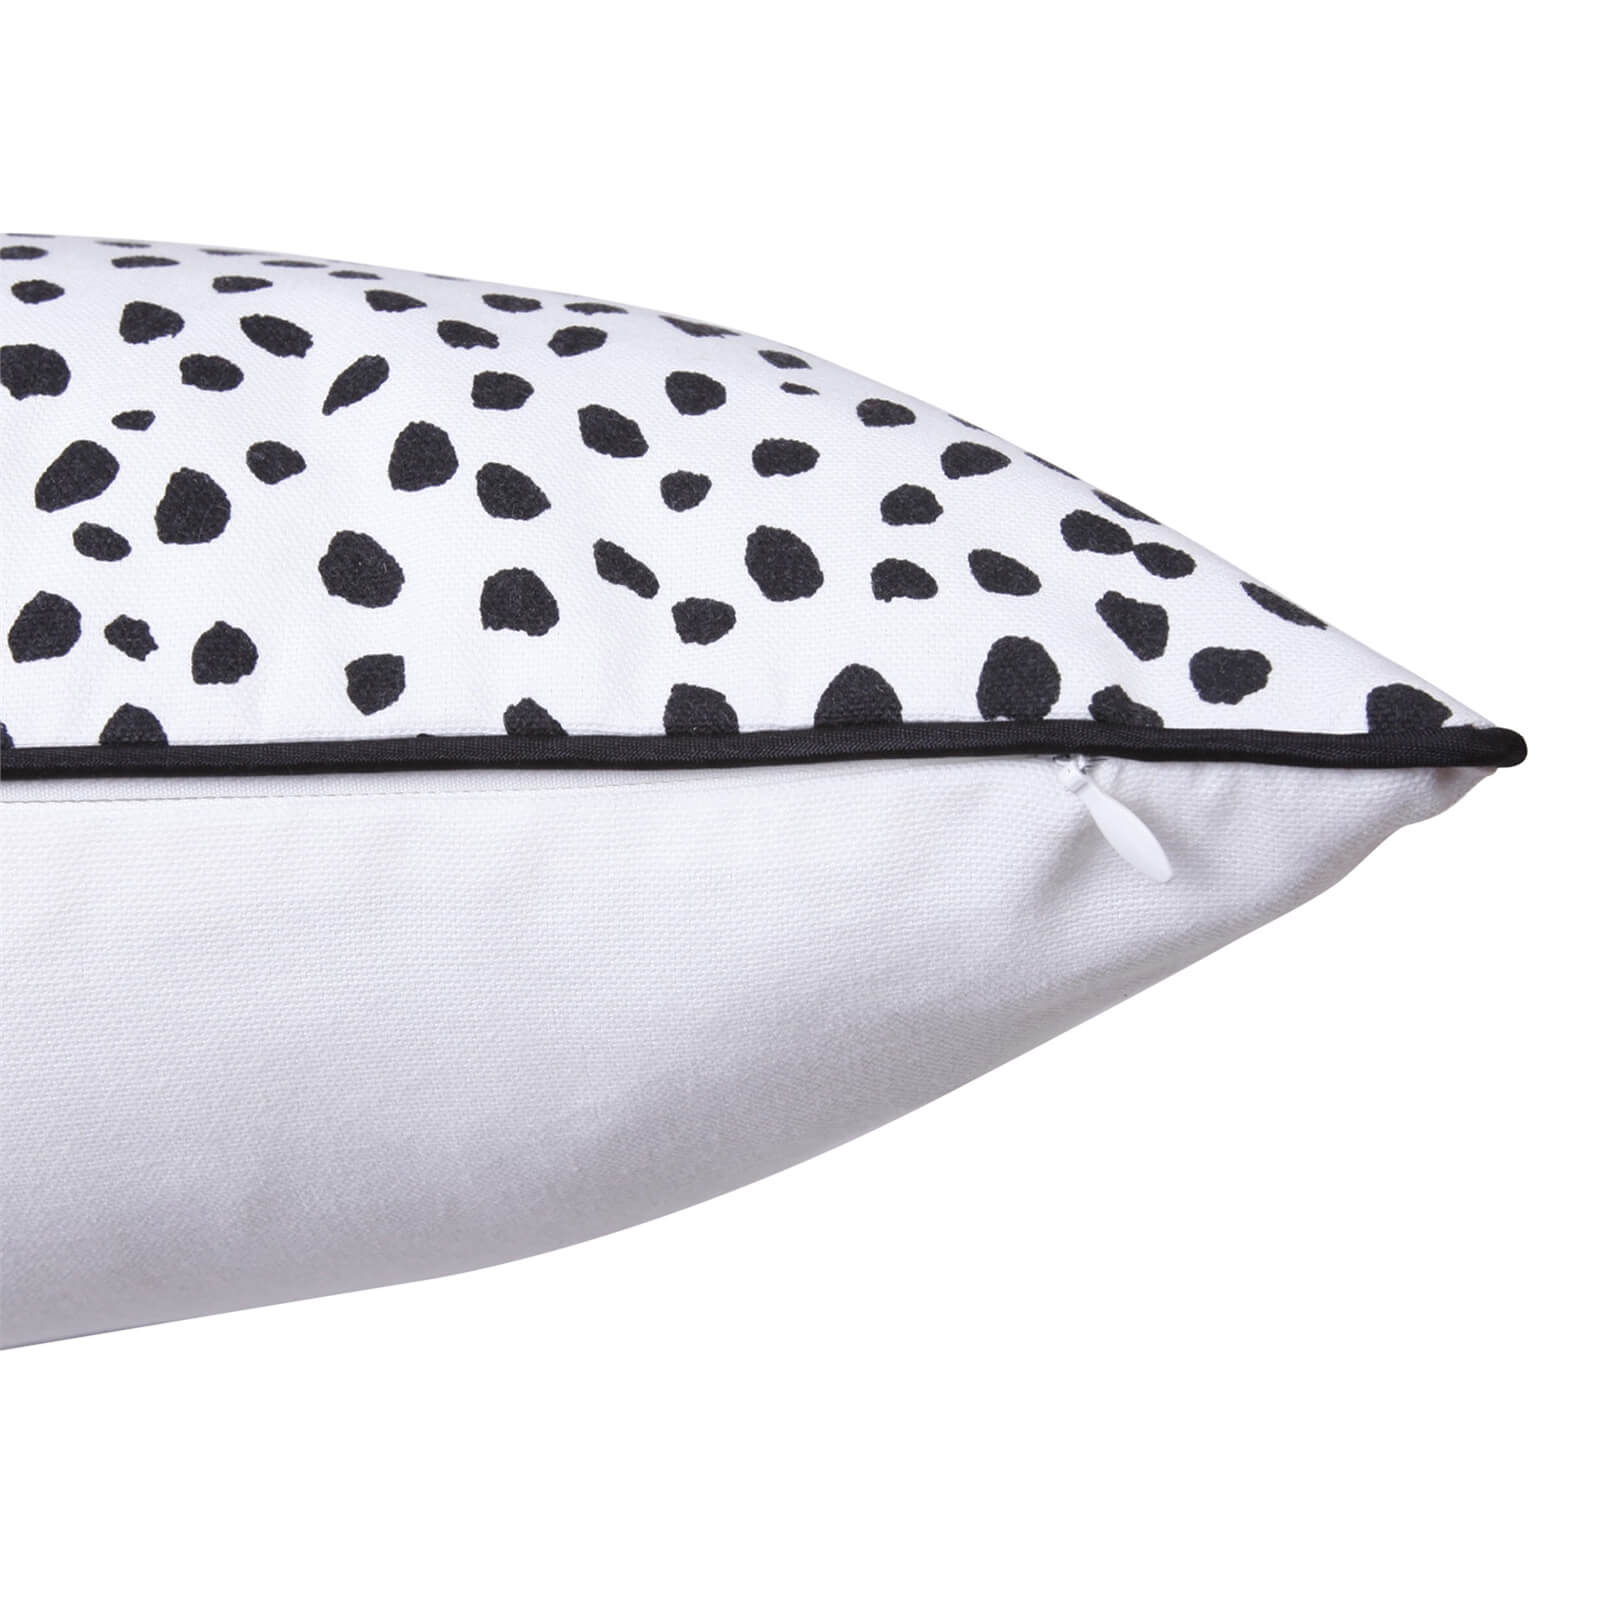 Plain Dalmatian Cushion